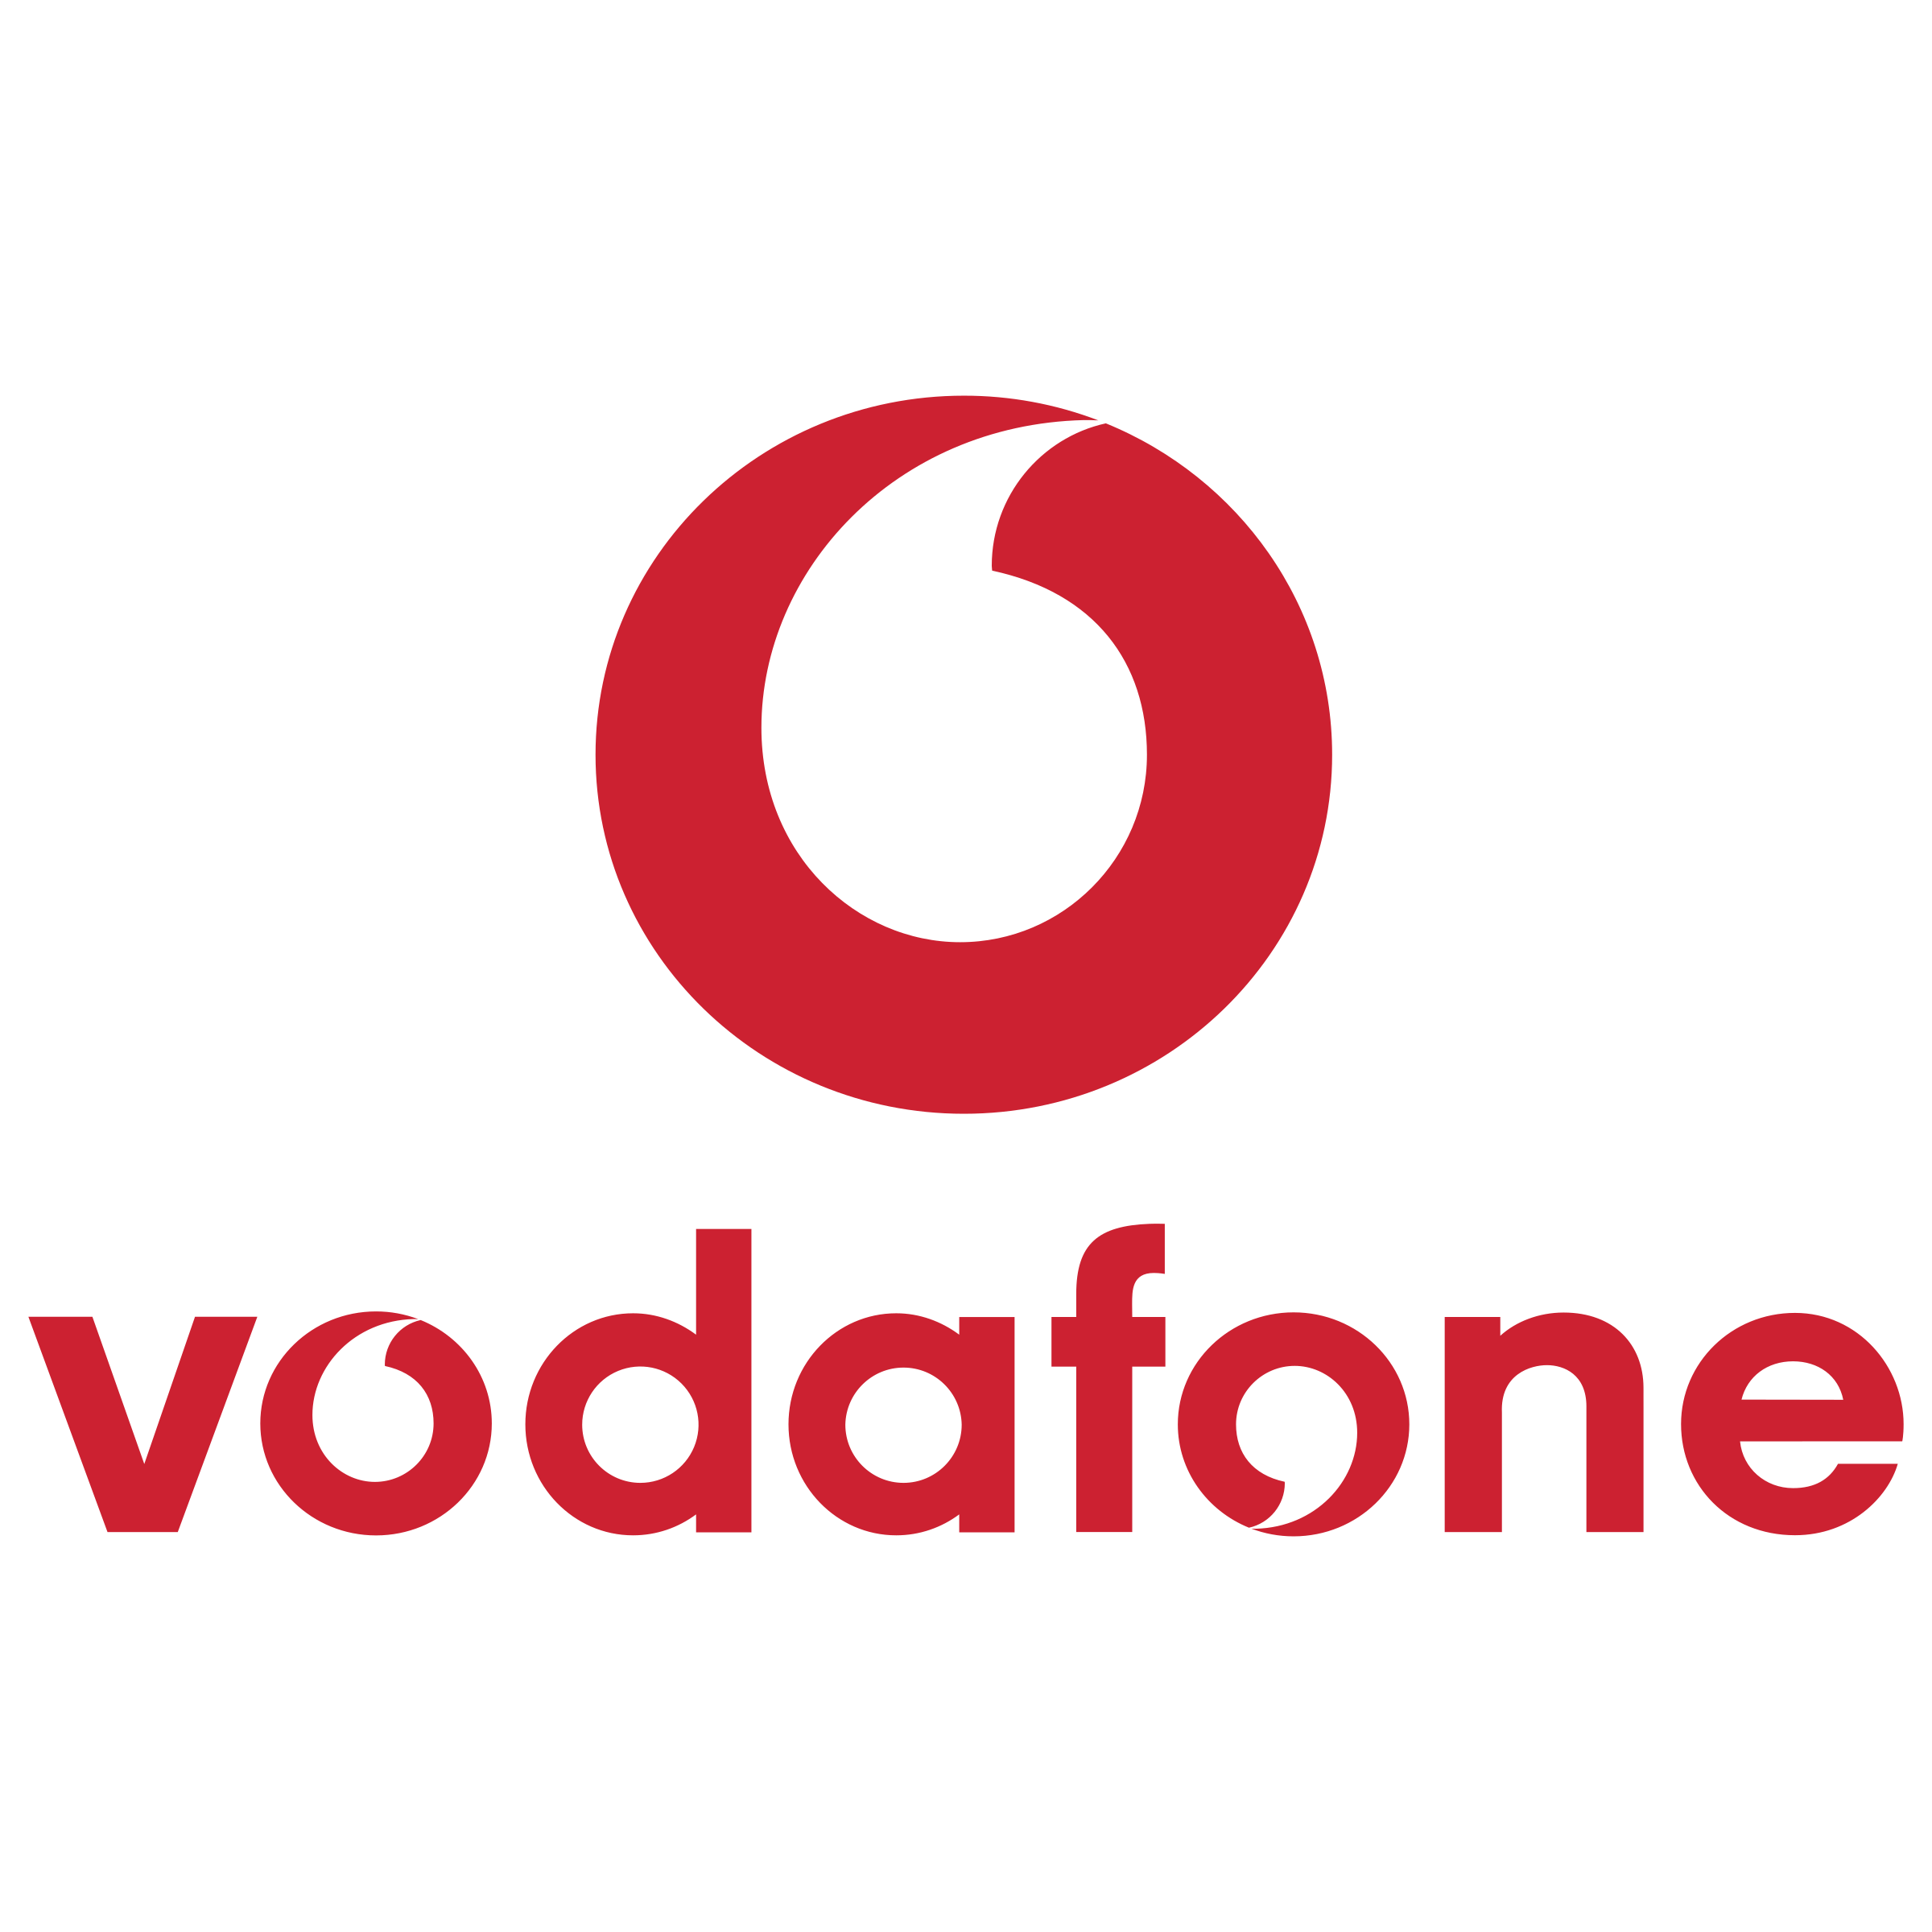 Vodafone Logo PNG Transparent & SVG Vector.